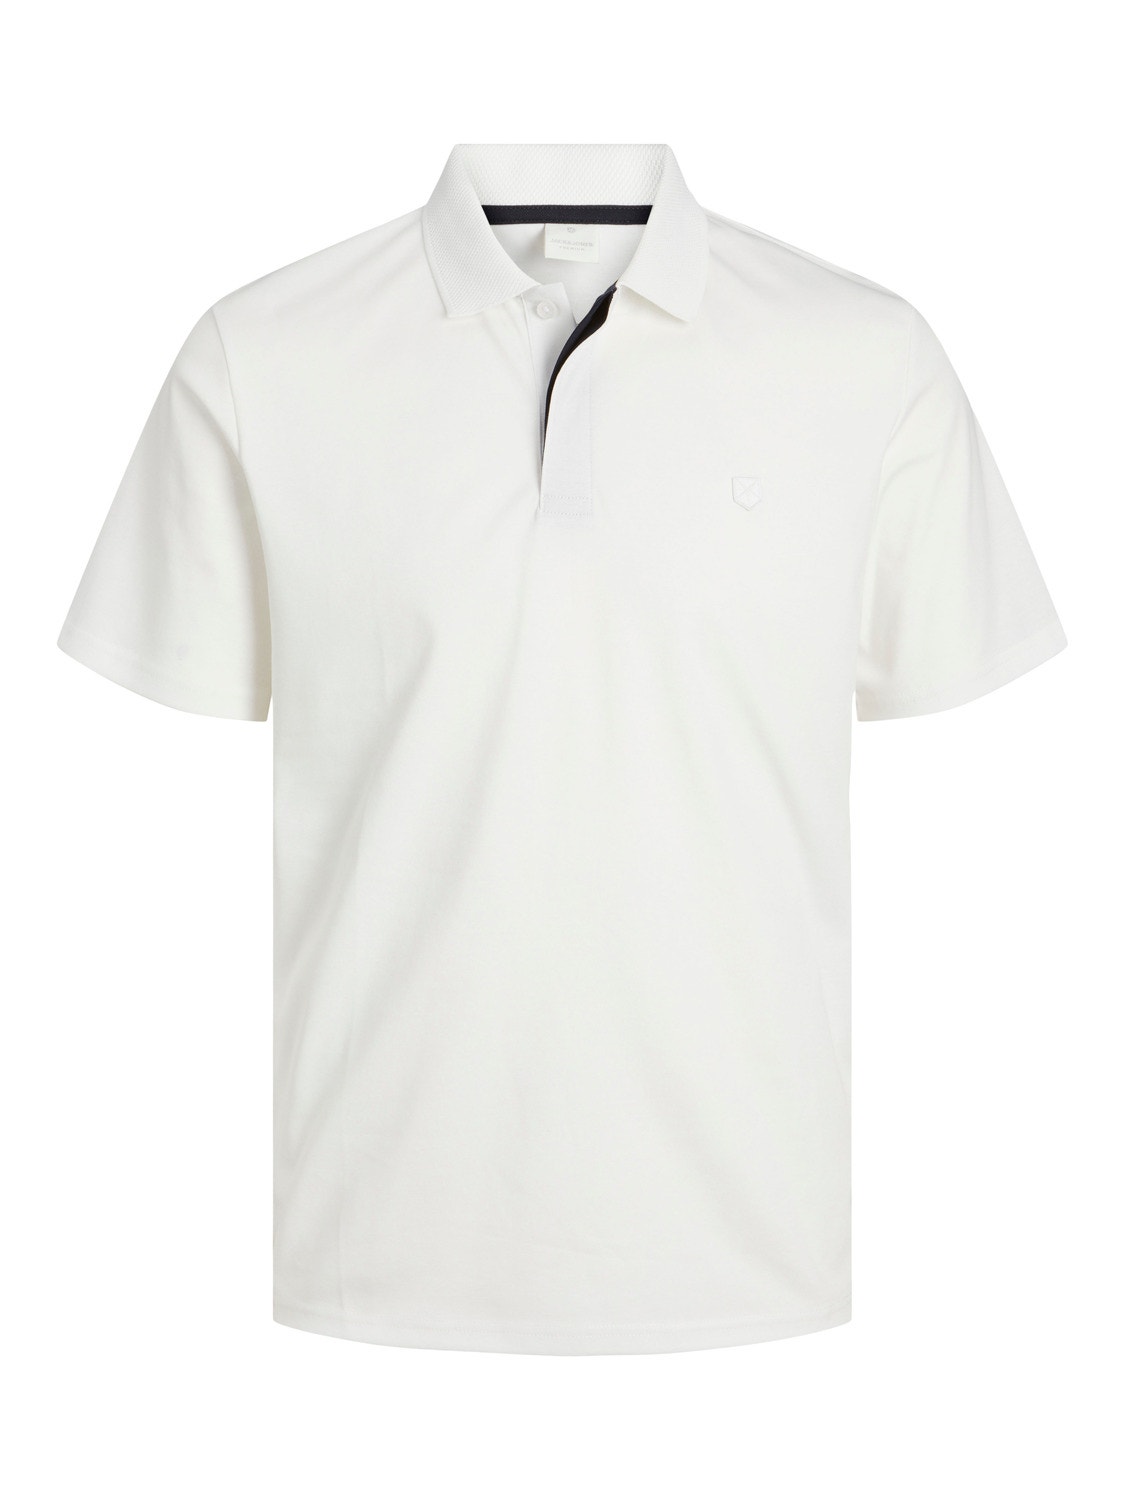 Jack & Jones Plain Polo T-shirt -Cloud Dancer - 12251180